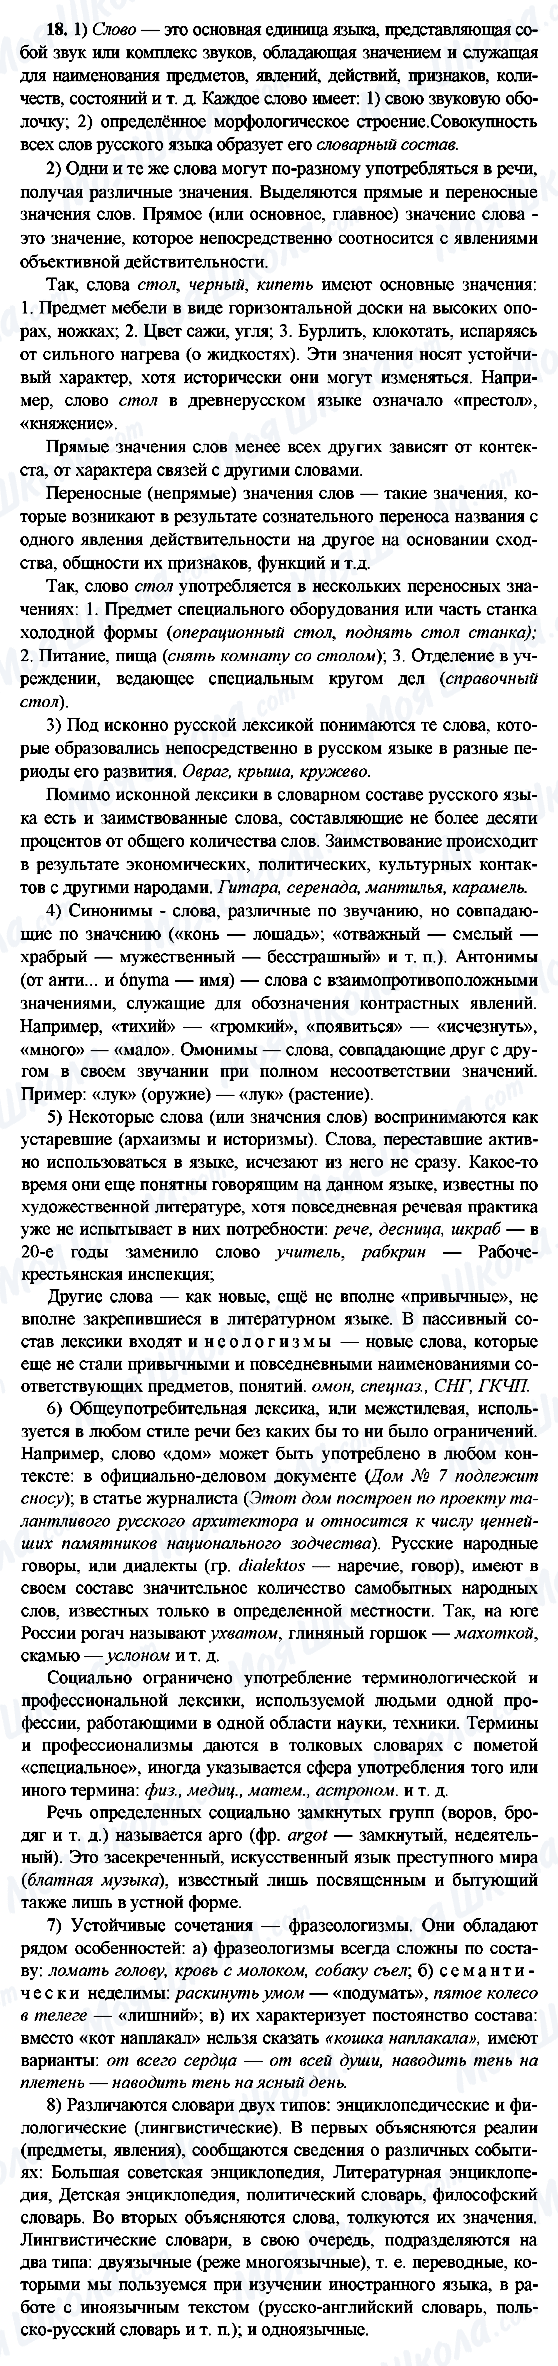 ГДЗ Російська мова 9 клас сторінка 18